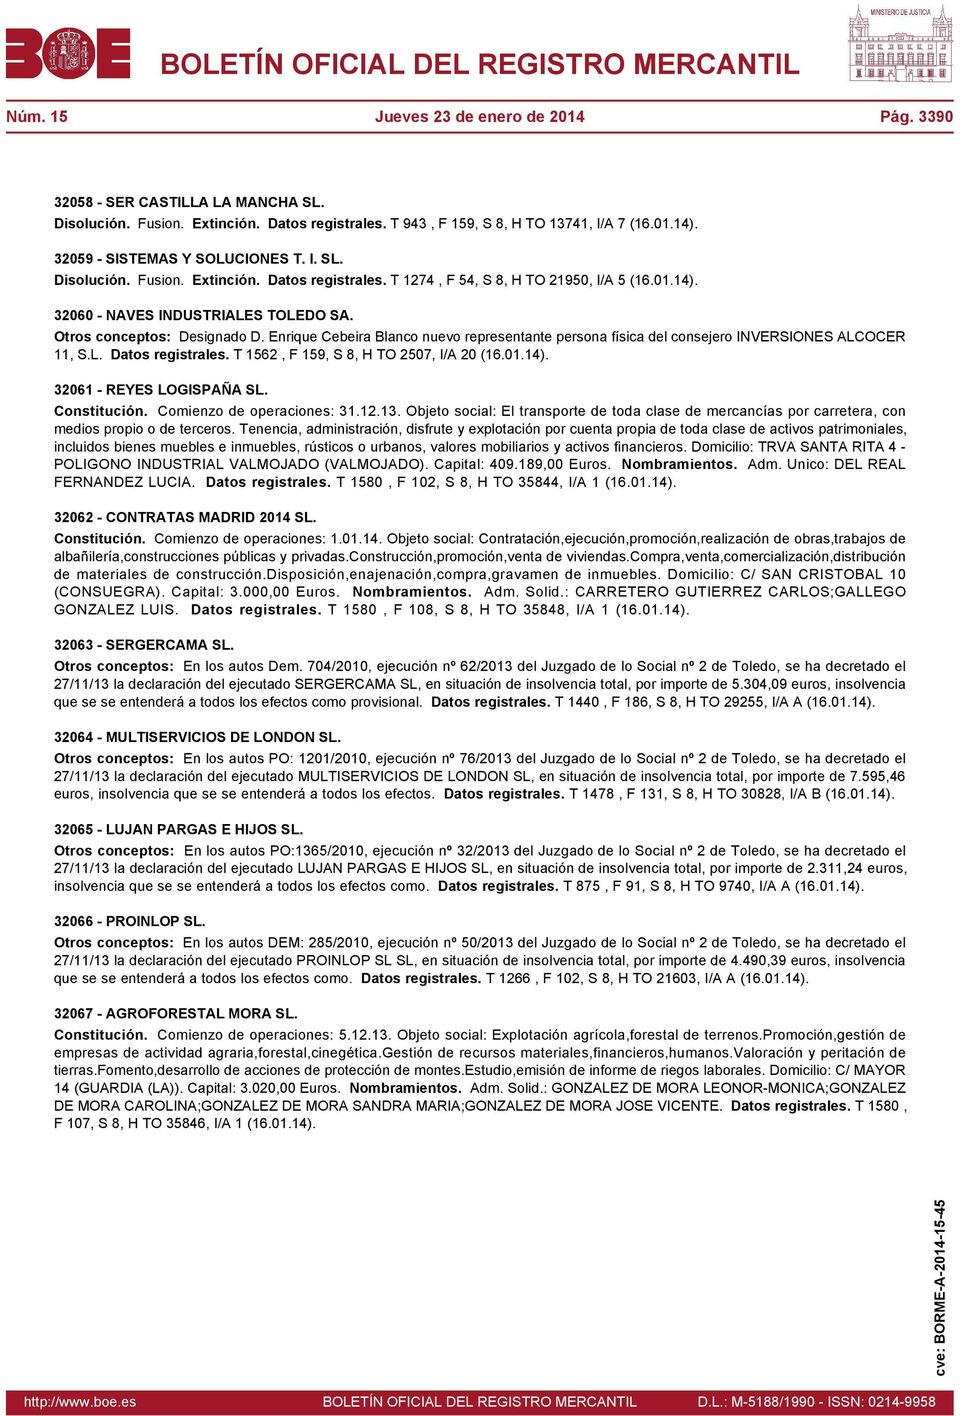 Enrique Cebeira Blanco nuevo representante persona física del consejero INVERSIONES ALCOCER 11, S.L. Datos registrales. T 1562, F 159, S 8, H TO 2507, I/A 20 32061 - REYES LOGISPAÑA SL. Constitución.